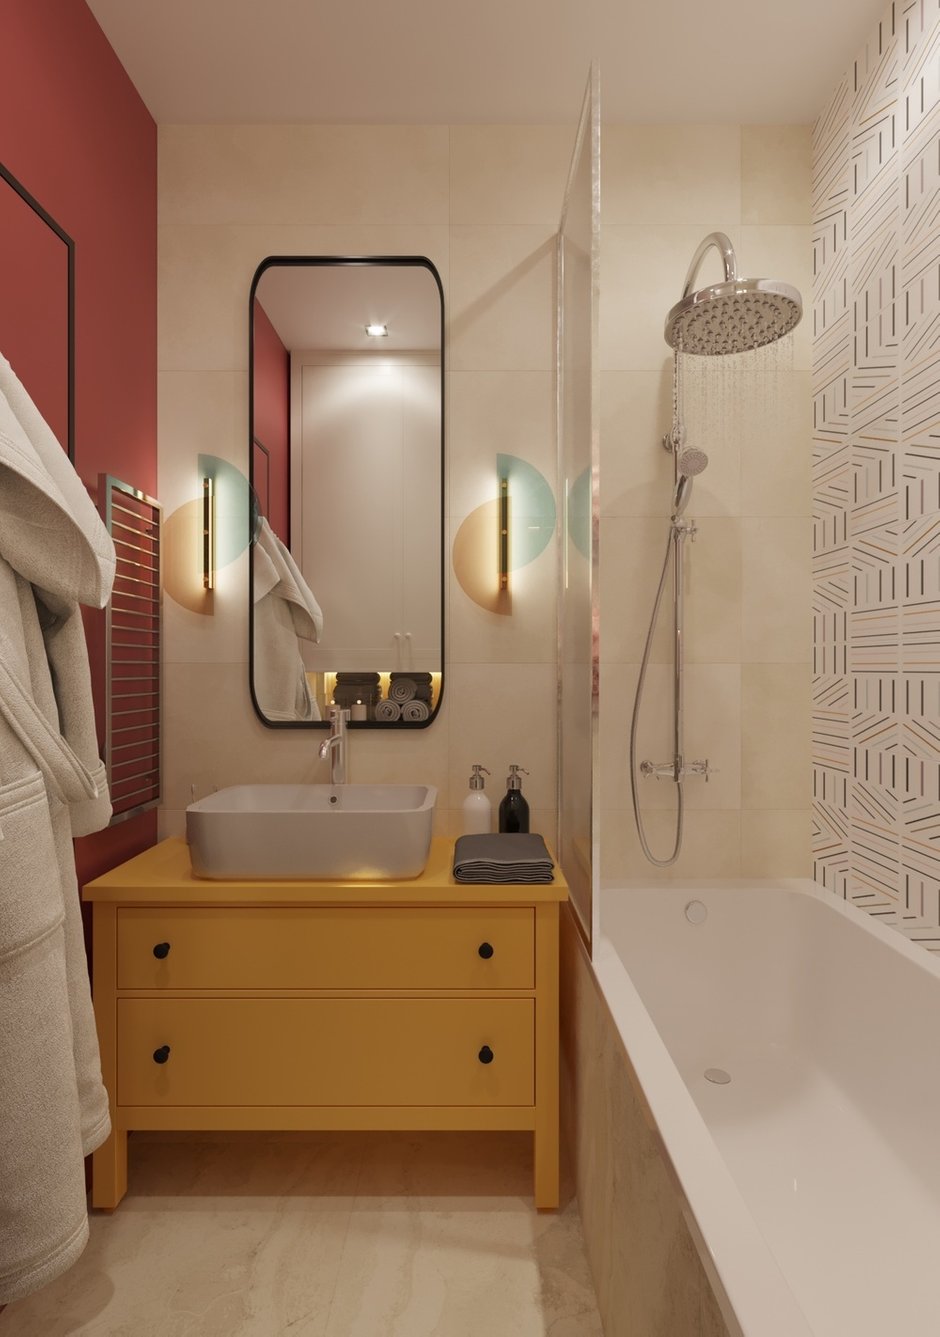 Для ванной выбрали несколько видов плитки светлых оттенков и яркую краску. Тумба под раковину желтого цвета поднимает настроение.